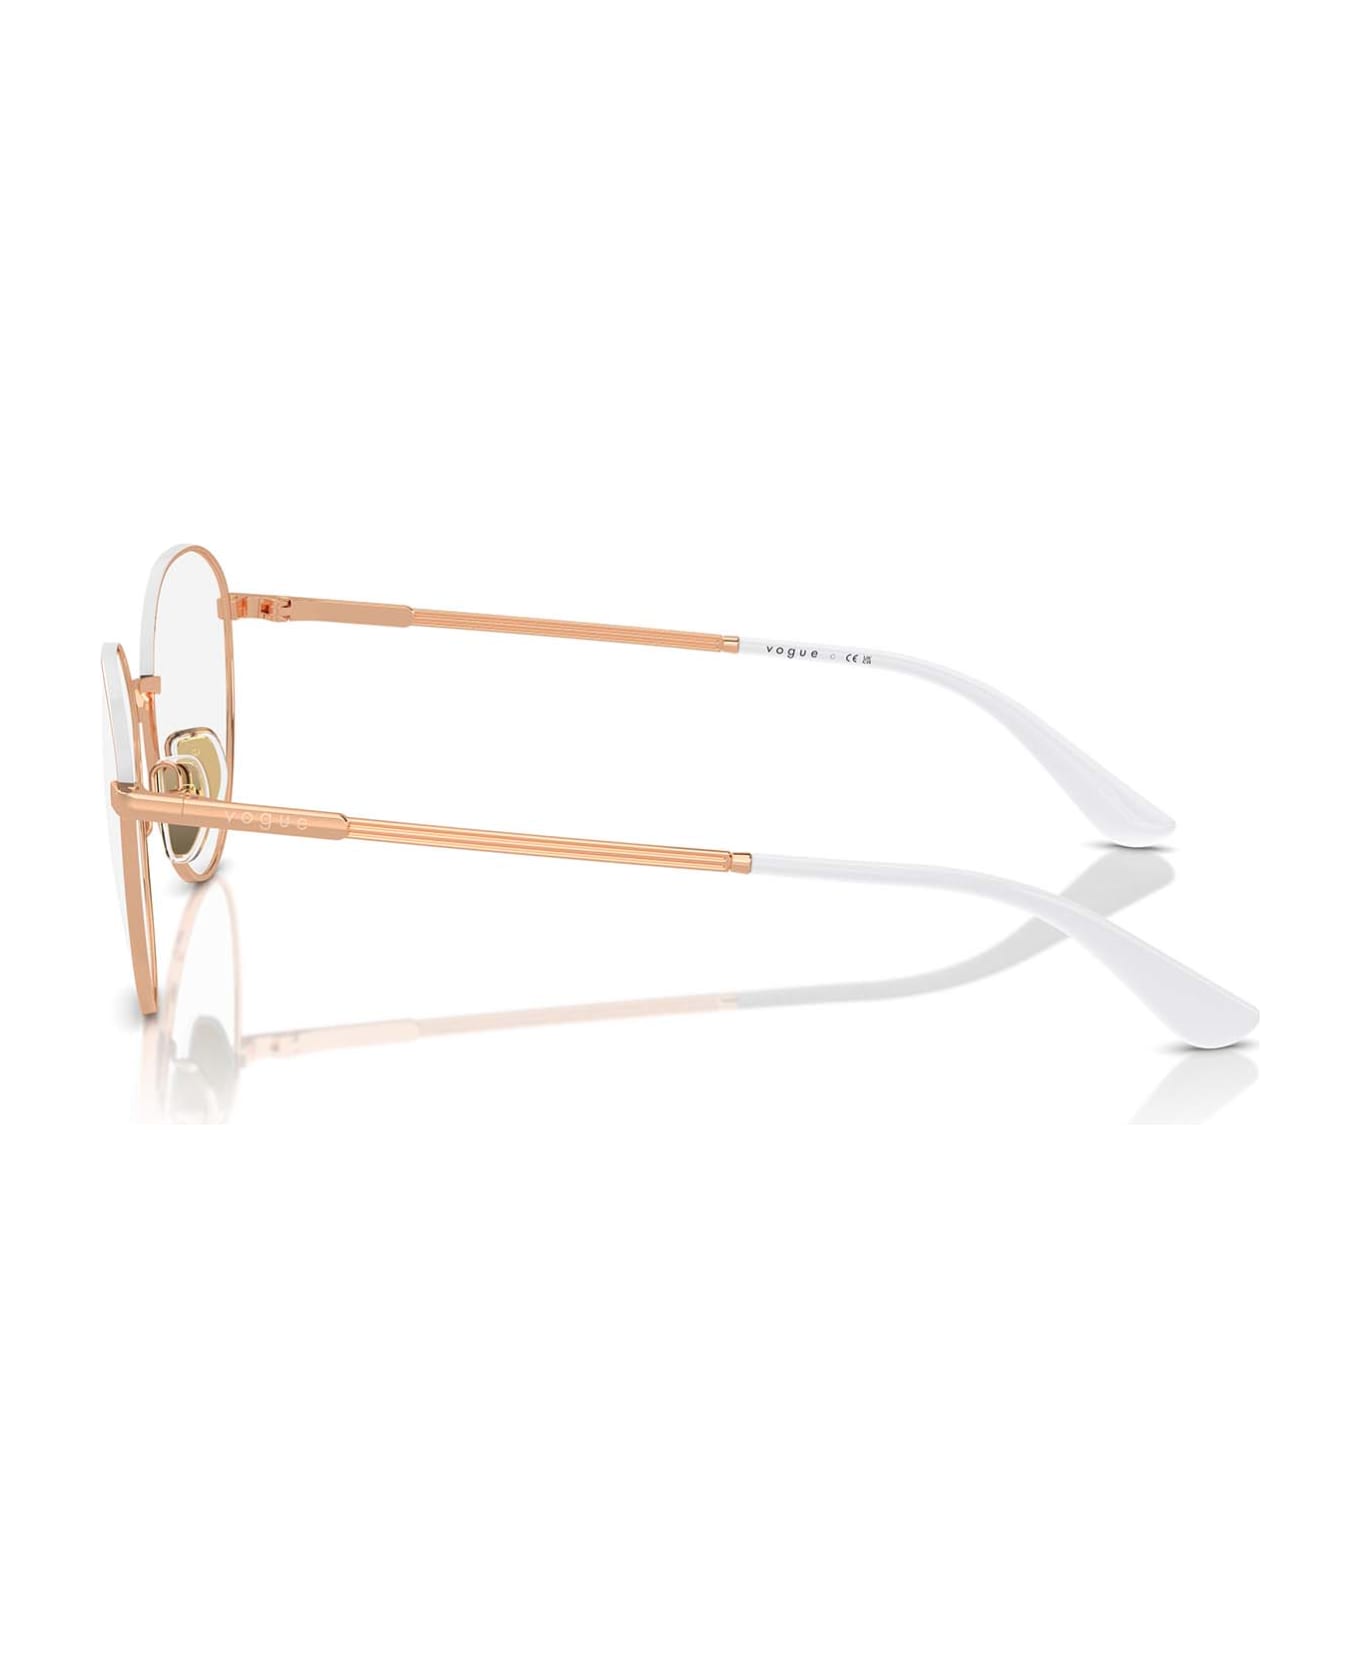 Vogue Eyewear Vo4306 Rose Gold / Top White Glasses - Rose Gold / Top White